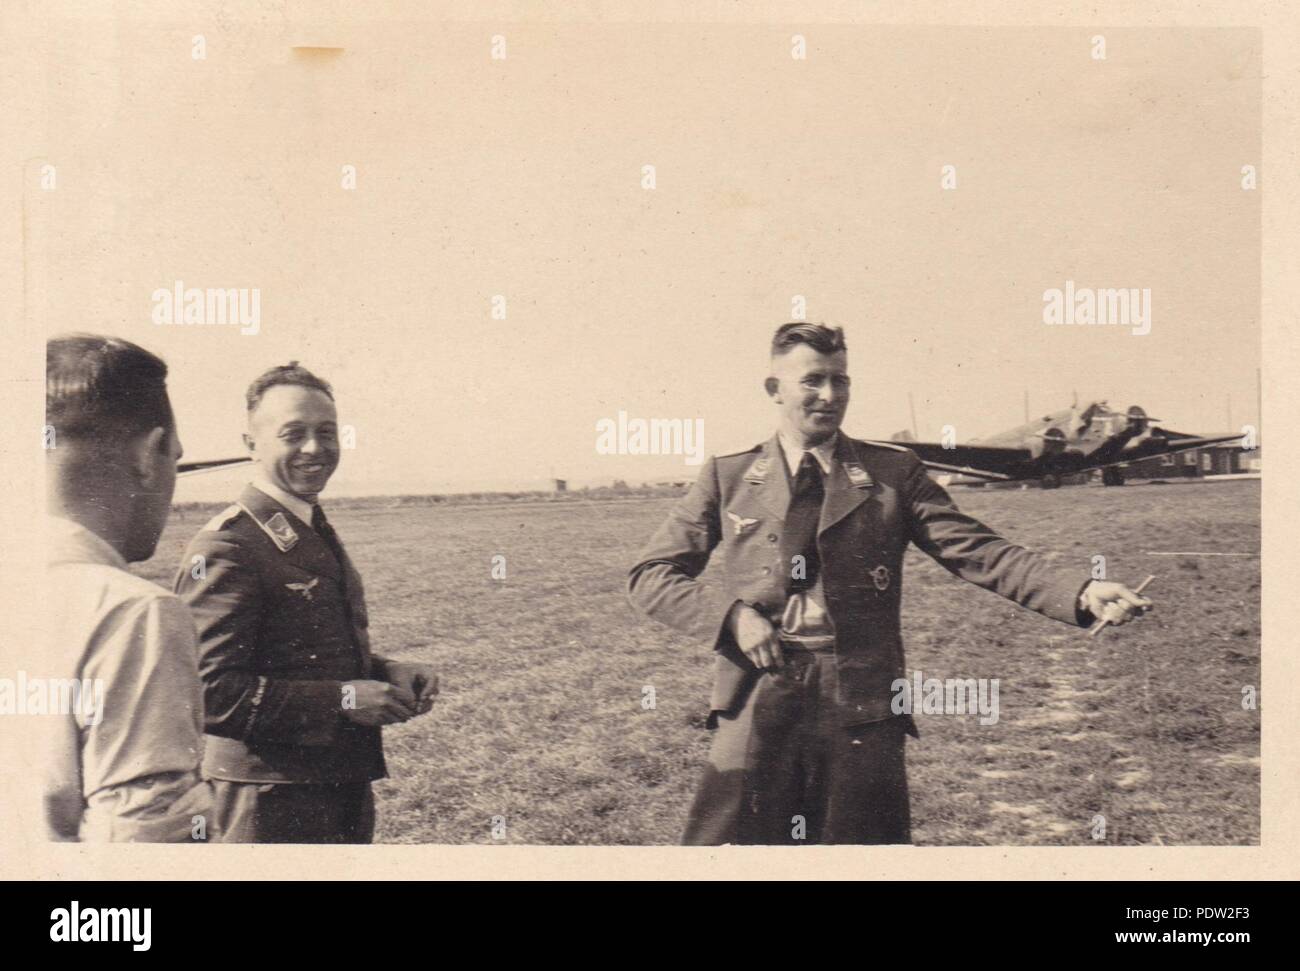 Droit de l'album photo de Karl Oberfeldwebel Gendner de 1. La Kampfgeschwader 40 Staffel, l'Oberleutnant : Leo Drengk, Staffelkapitän du 3./KGzbV 9, parle à d'autres agents à l'aérodrome de la Luftwaffe Lüben en Allemagne de l'est pendant la campagne de Pologne en septembre 1939. Un certain nombre de Junkers Ju 52/3m de 3 avions de transport./KGzbV 9 peut être vu dans l'arrière-plan. Banque D'Images